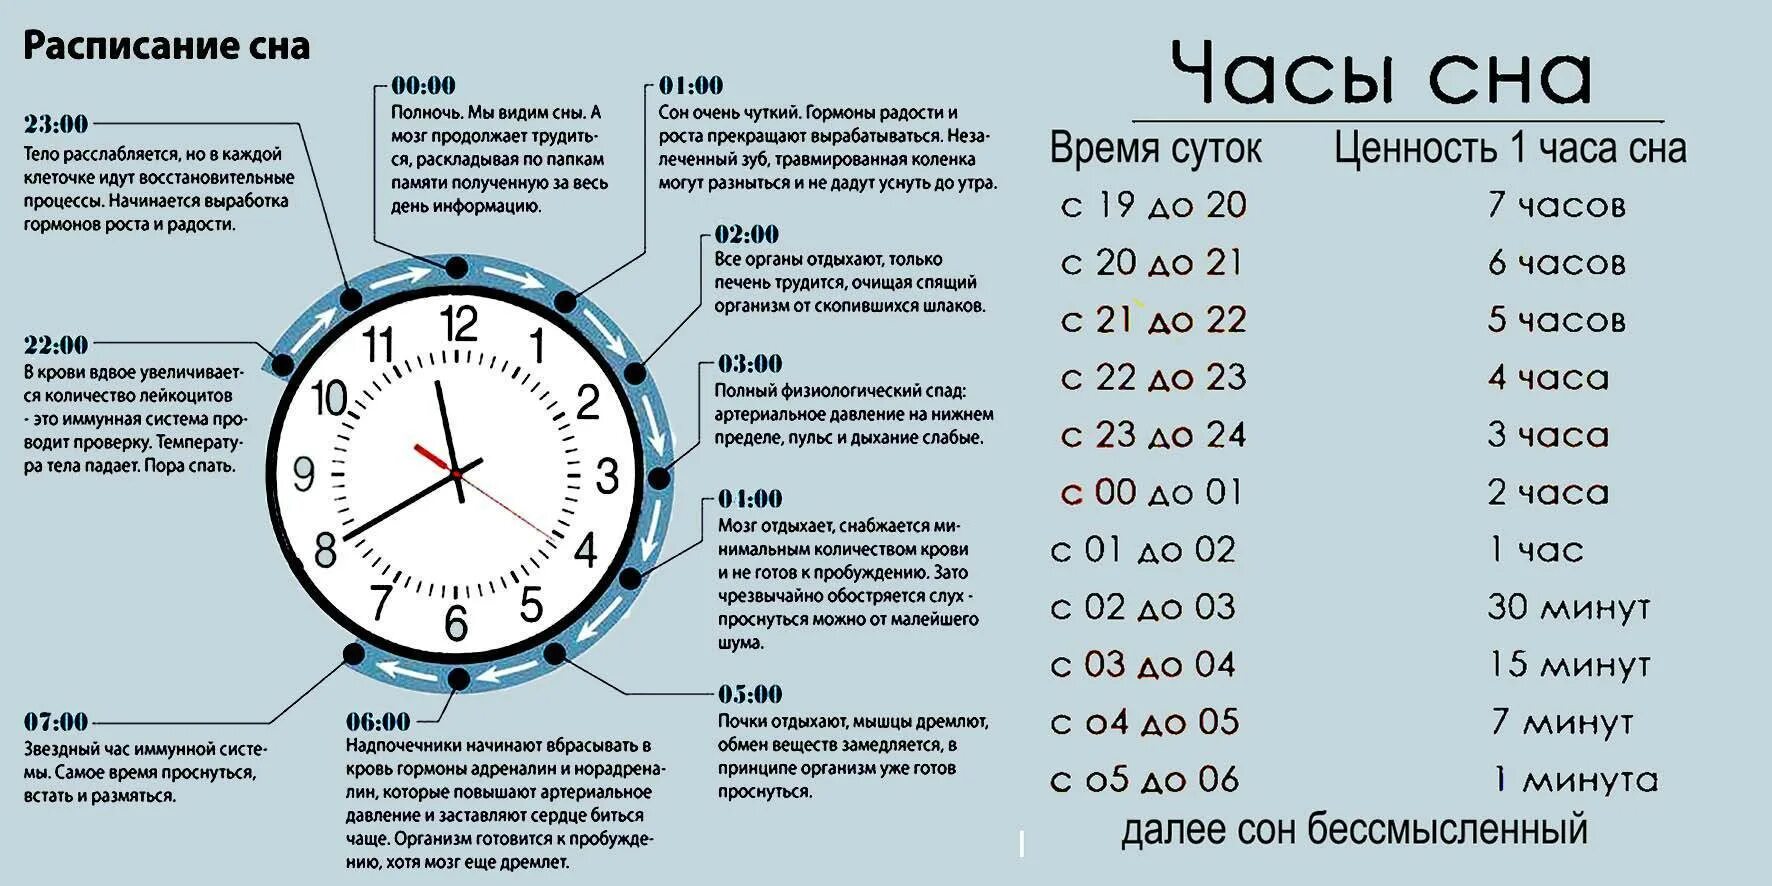 Сколько дней составляет срок. Эффективность сна по часам таблица. Ценность часов сна таблица. Ценность сна по часам таблица днем. Значимость сна по часам таблица.